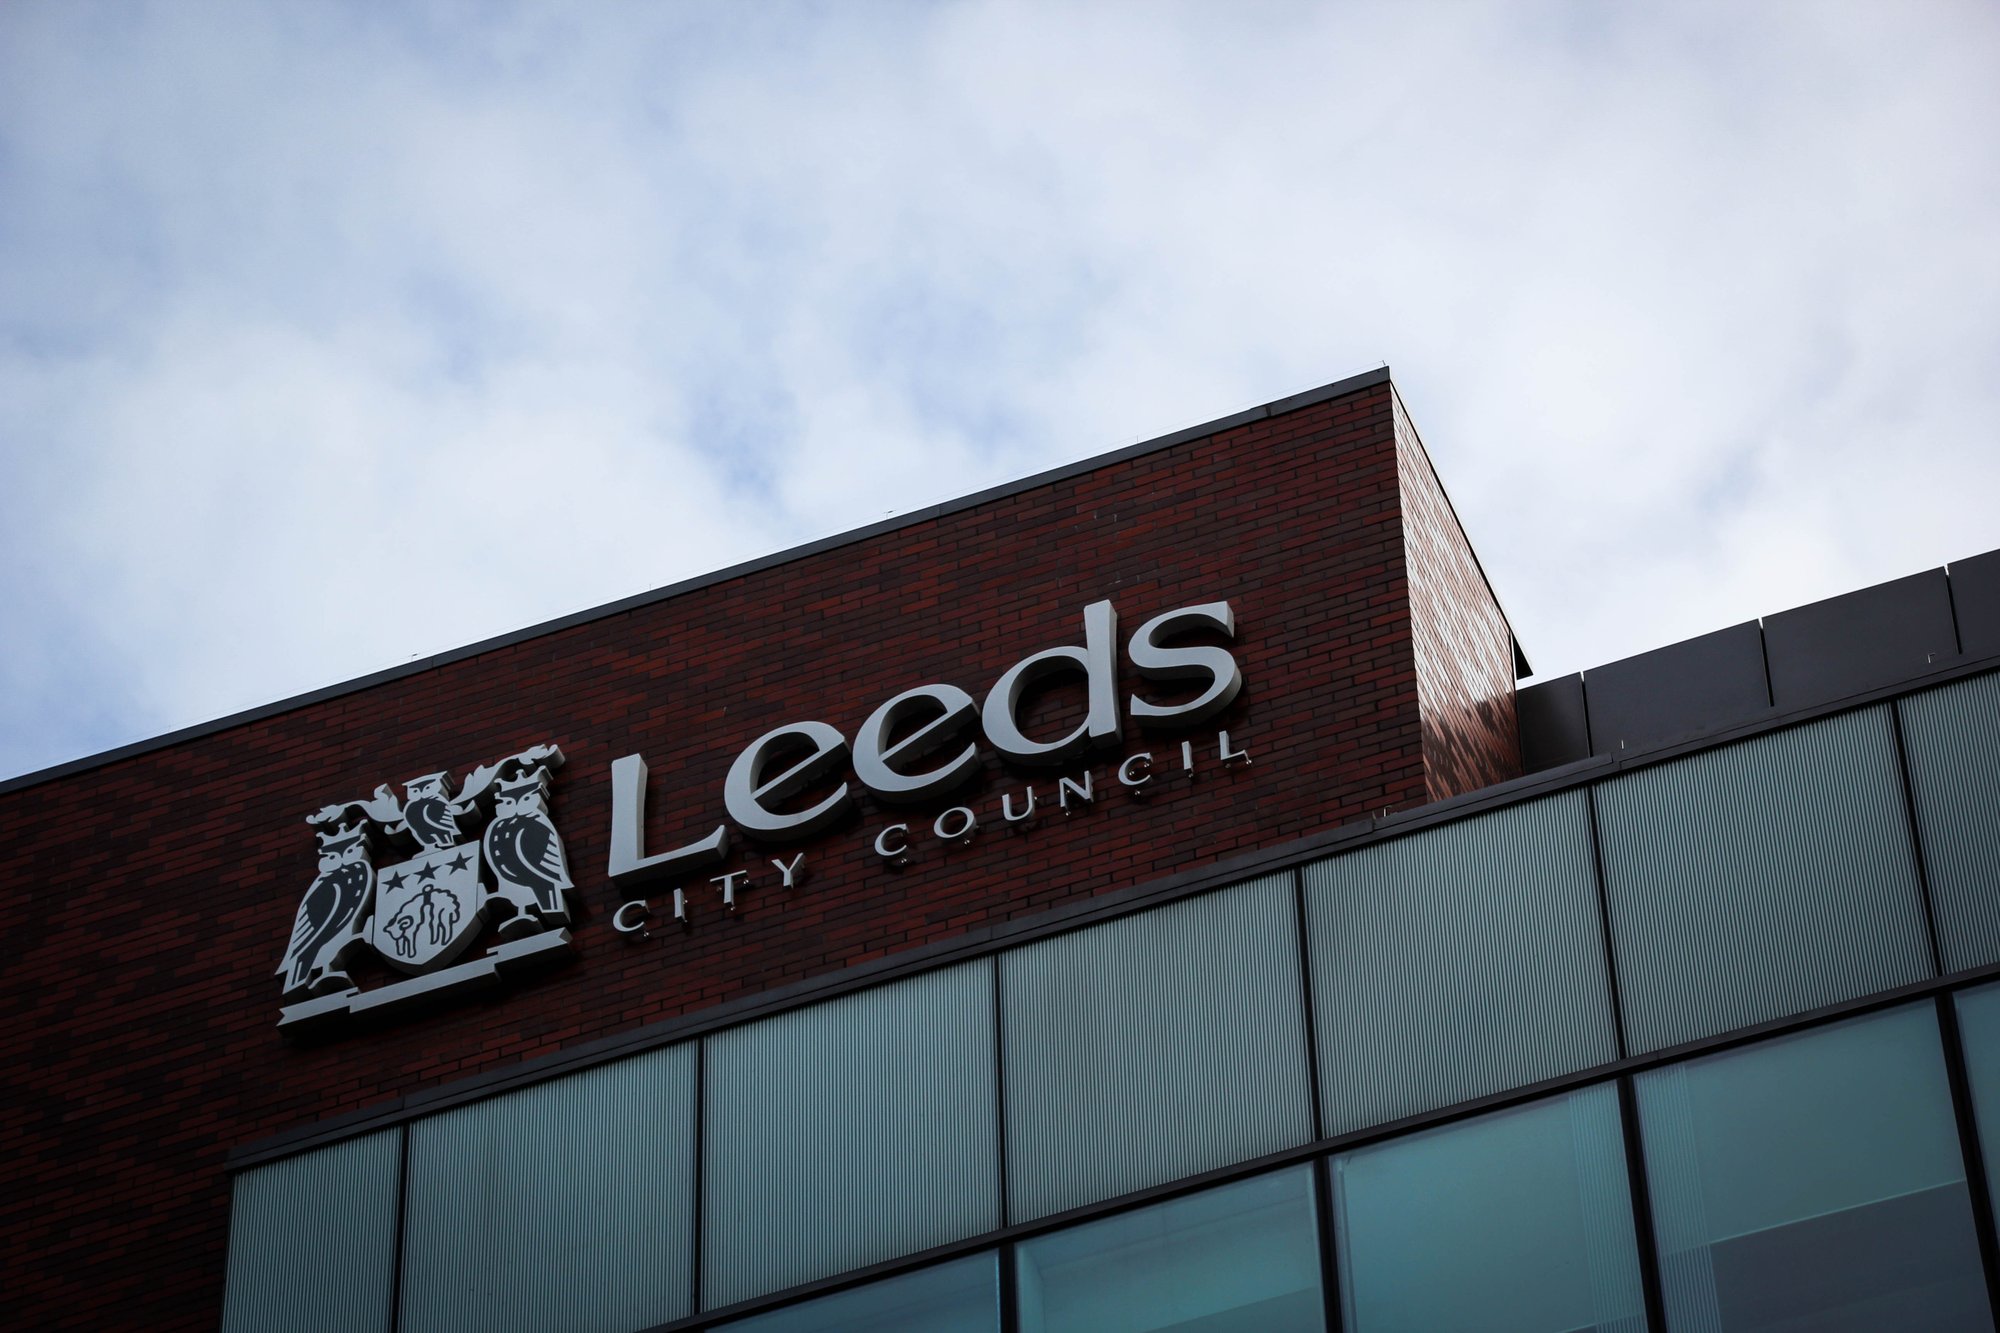 Leeds-city-council-building